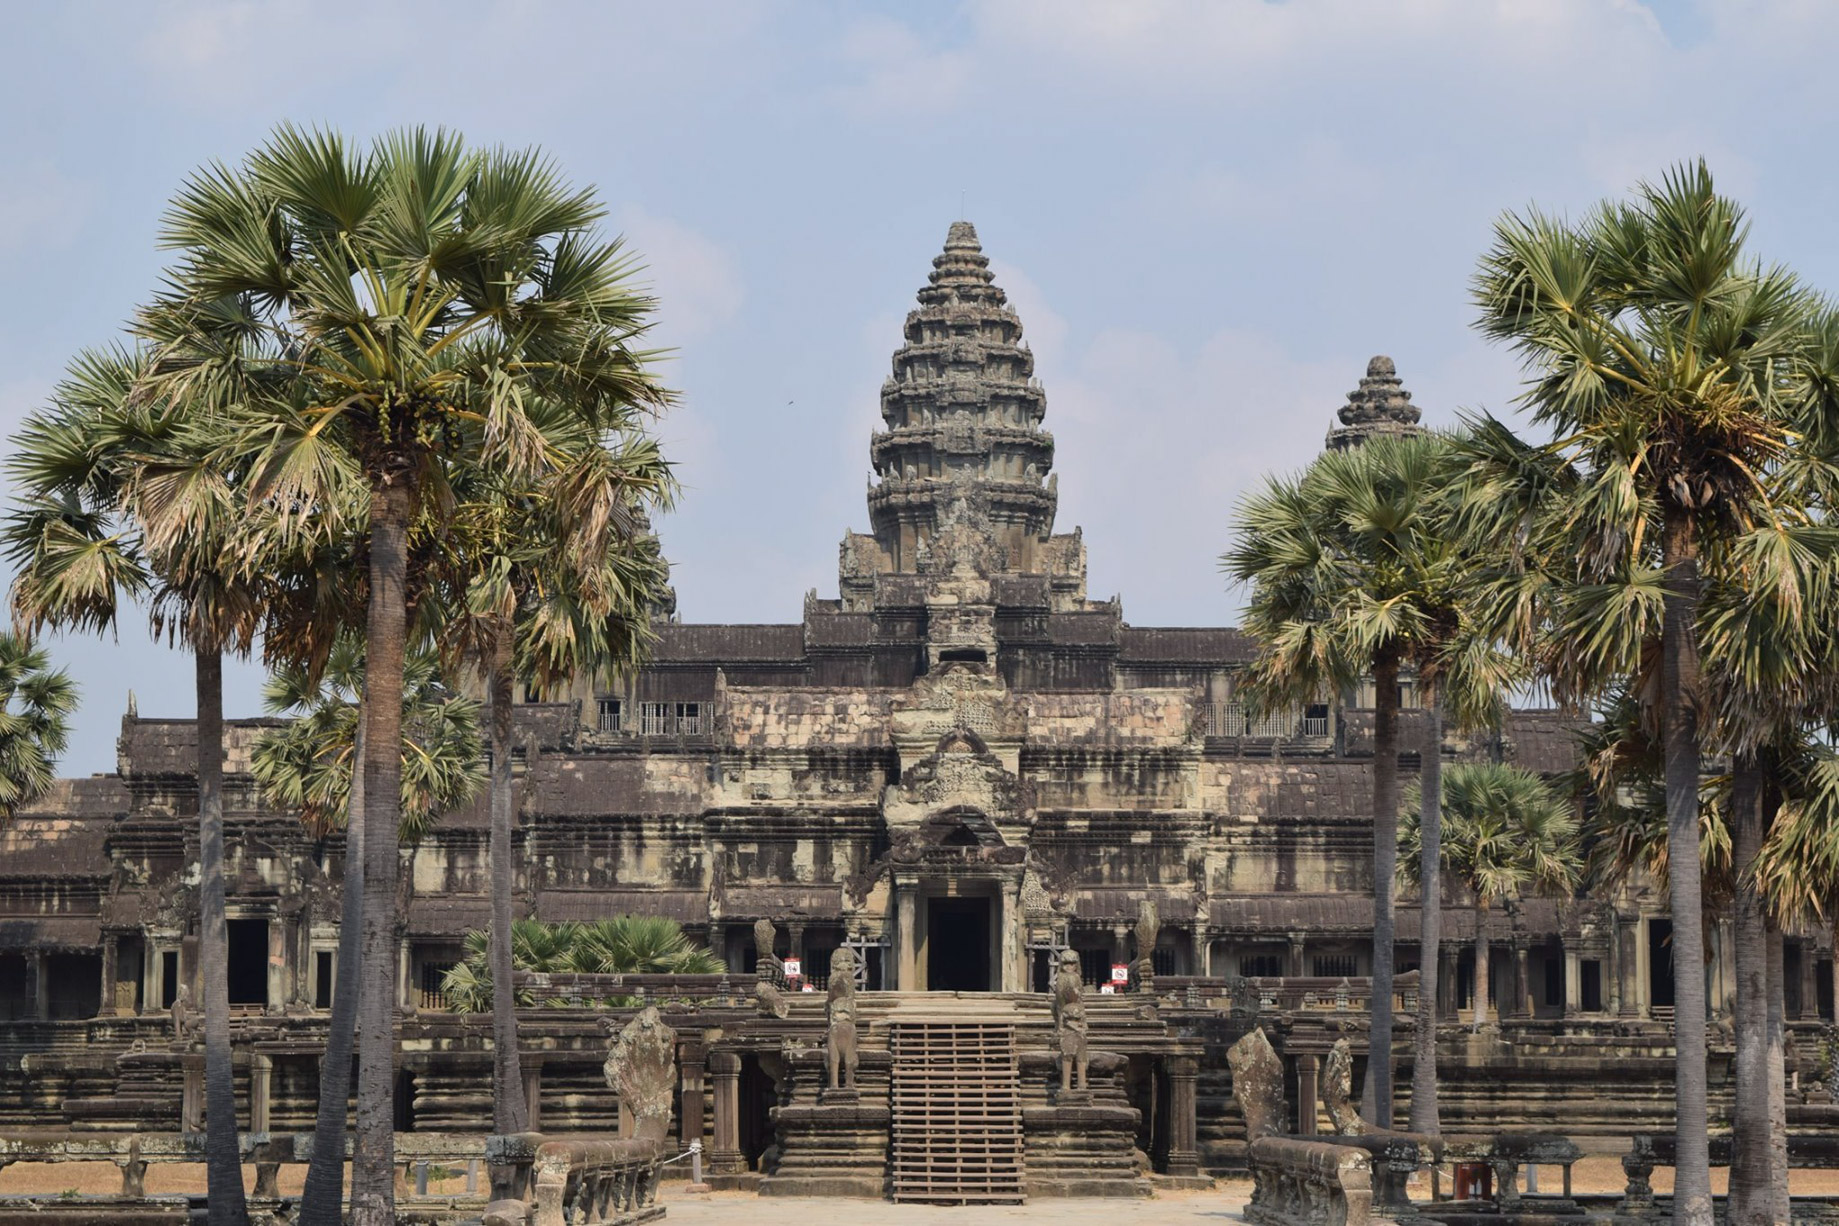 Anantara Angkor Resort – Siem Reap, Cambodia – Angkor Wat